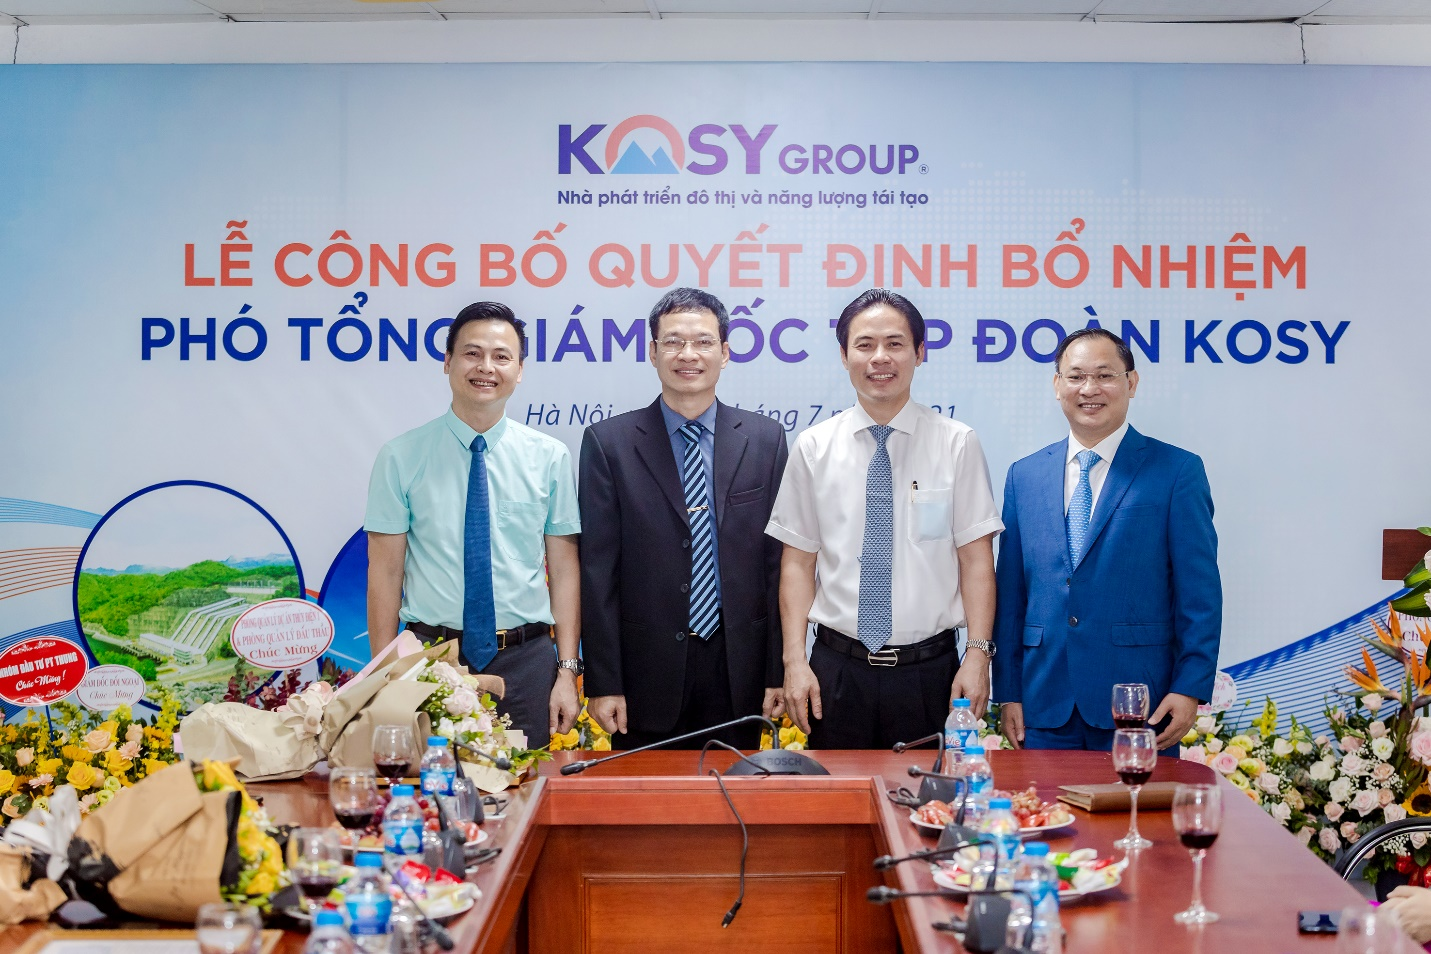 Chủ tịch Tập đoàn Kosy ông Nguyễn Việt Cường (áo trắng) chúc mừng 3 tân Phó TGĐ Tập đoàn.